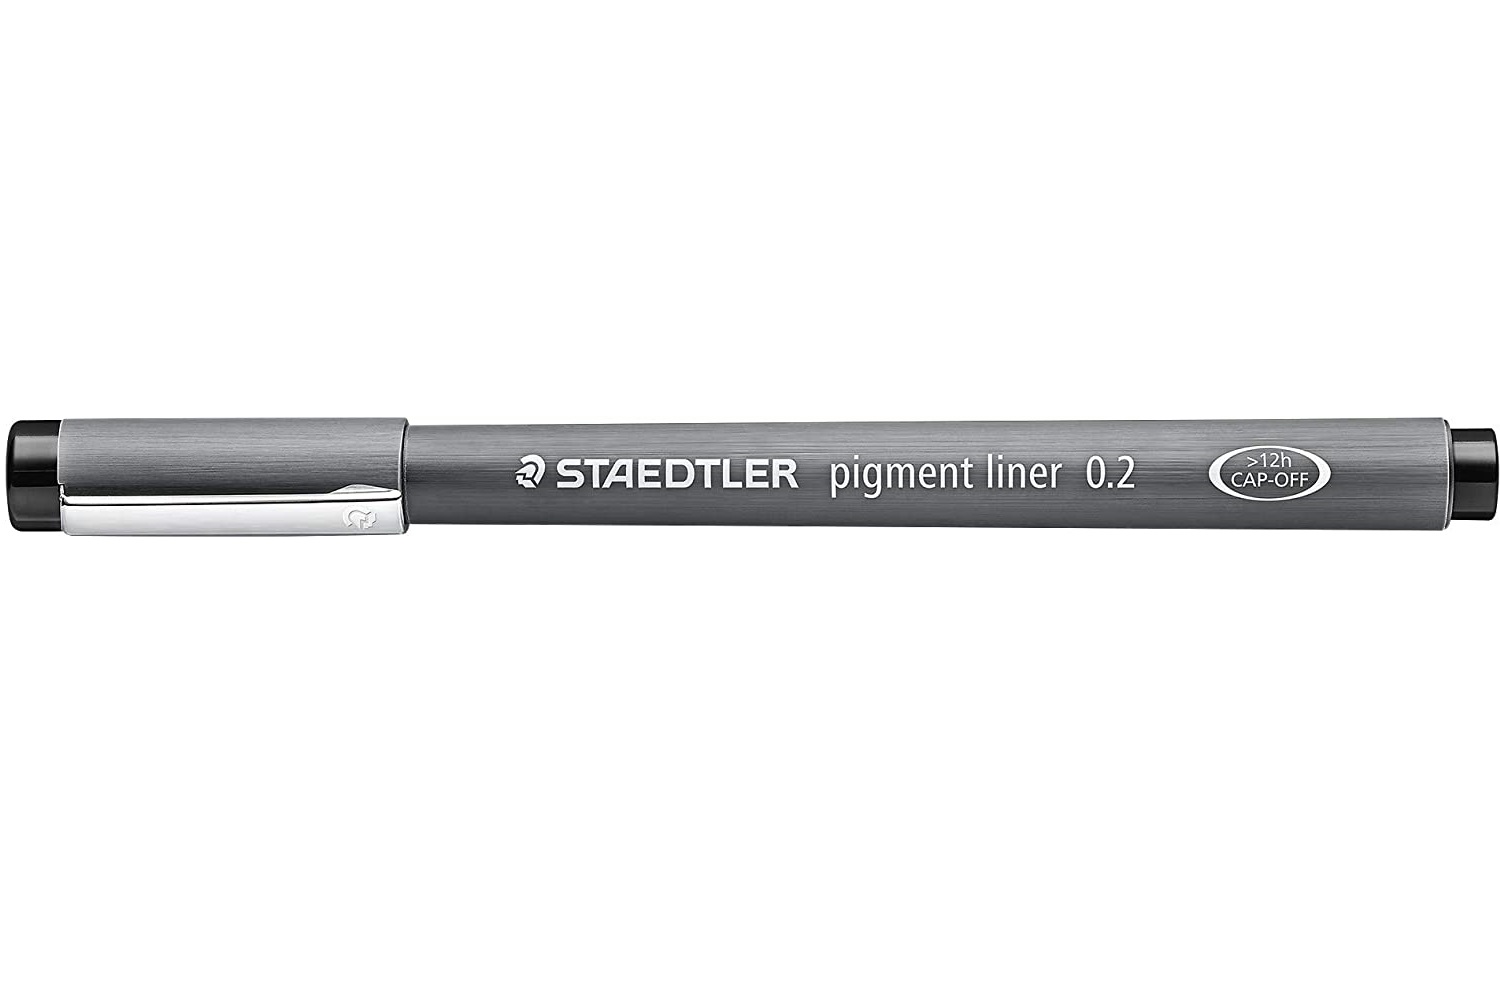 Staedtler Pigment Liner, 0.2 mm, Black Ink